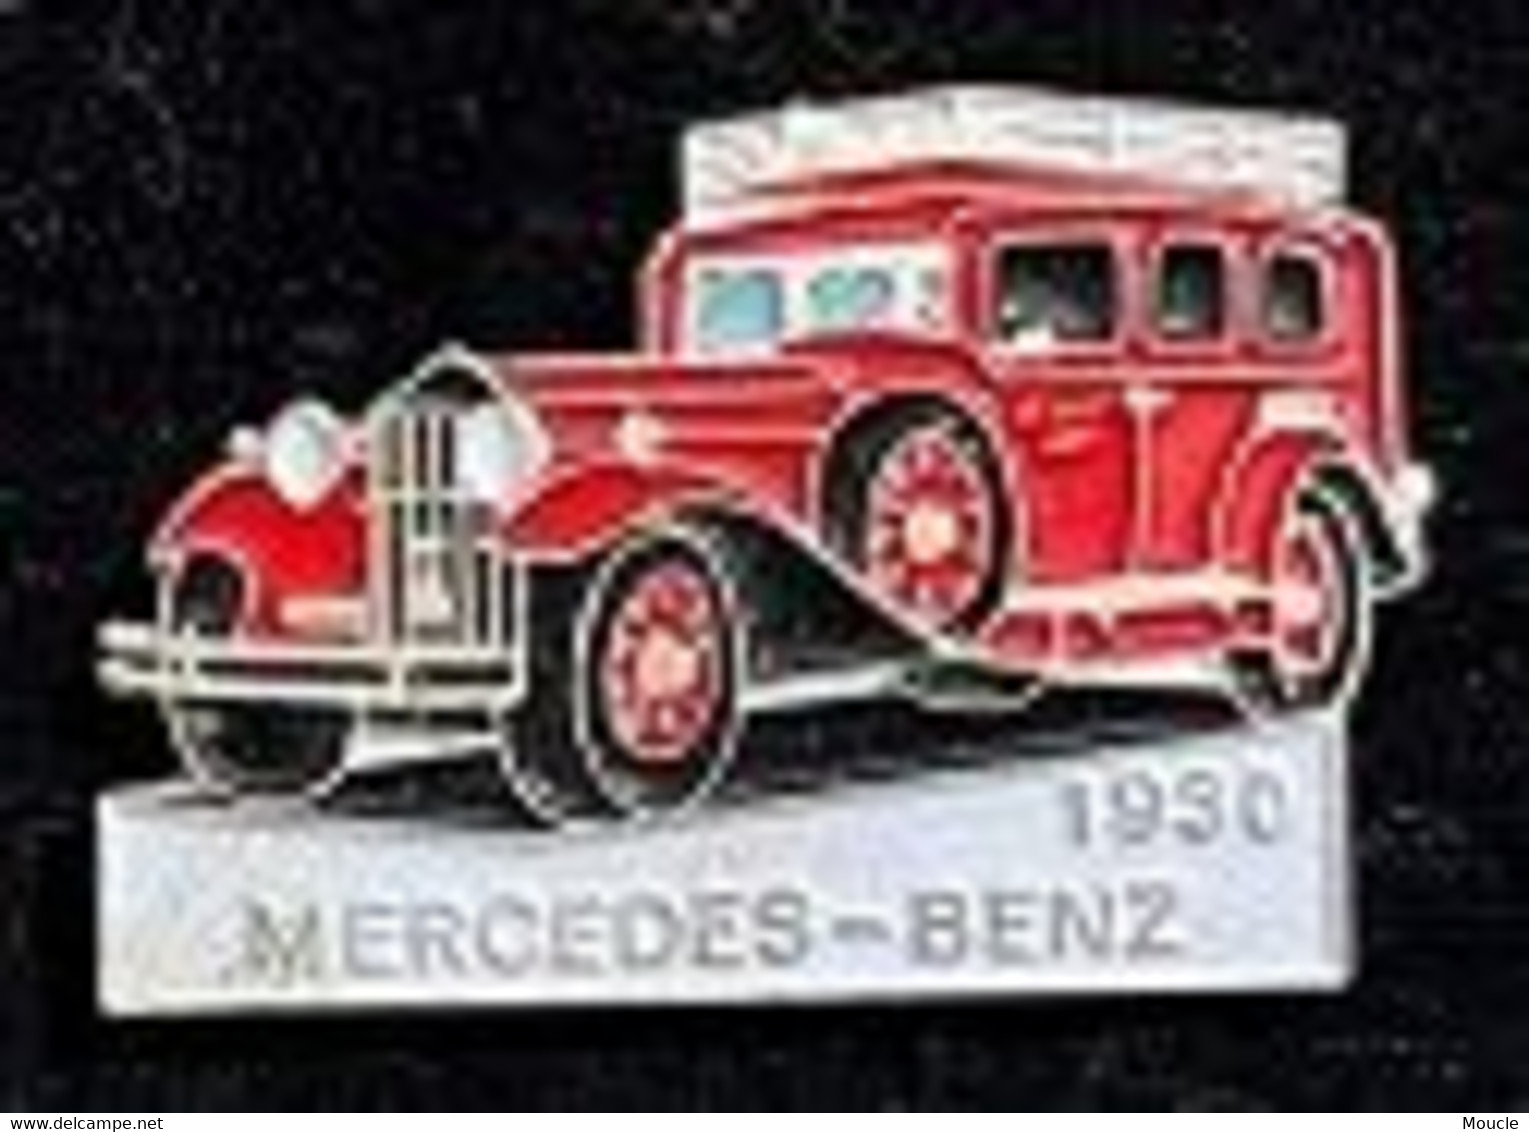 MERCEDES BENZ 1930 - ROUGE N°146 - SAPEURS POMPIERS - FEUEWEHRAUTO - VOITURE POMPIERS -CAR - AUTOMOBILE -     (30) - Bomberos